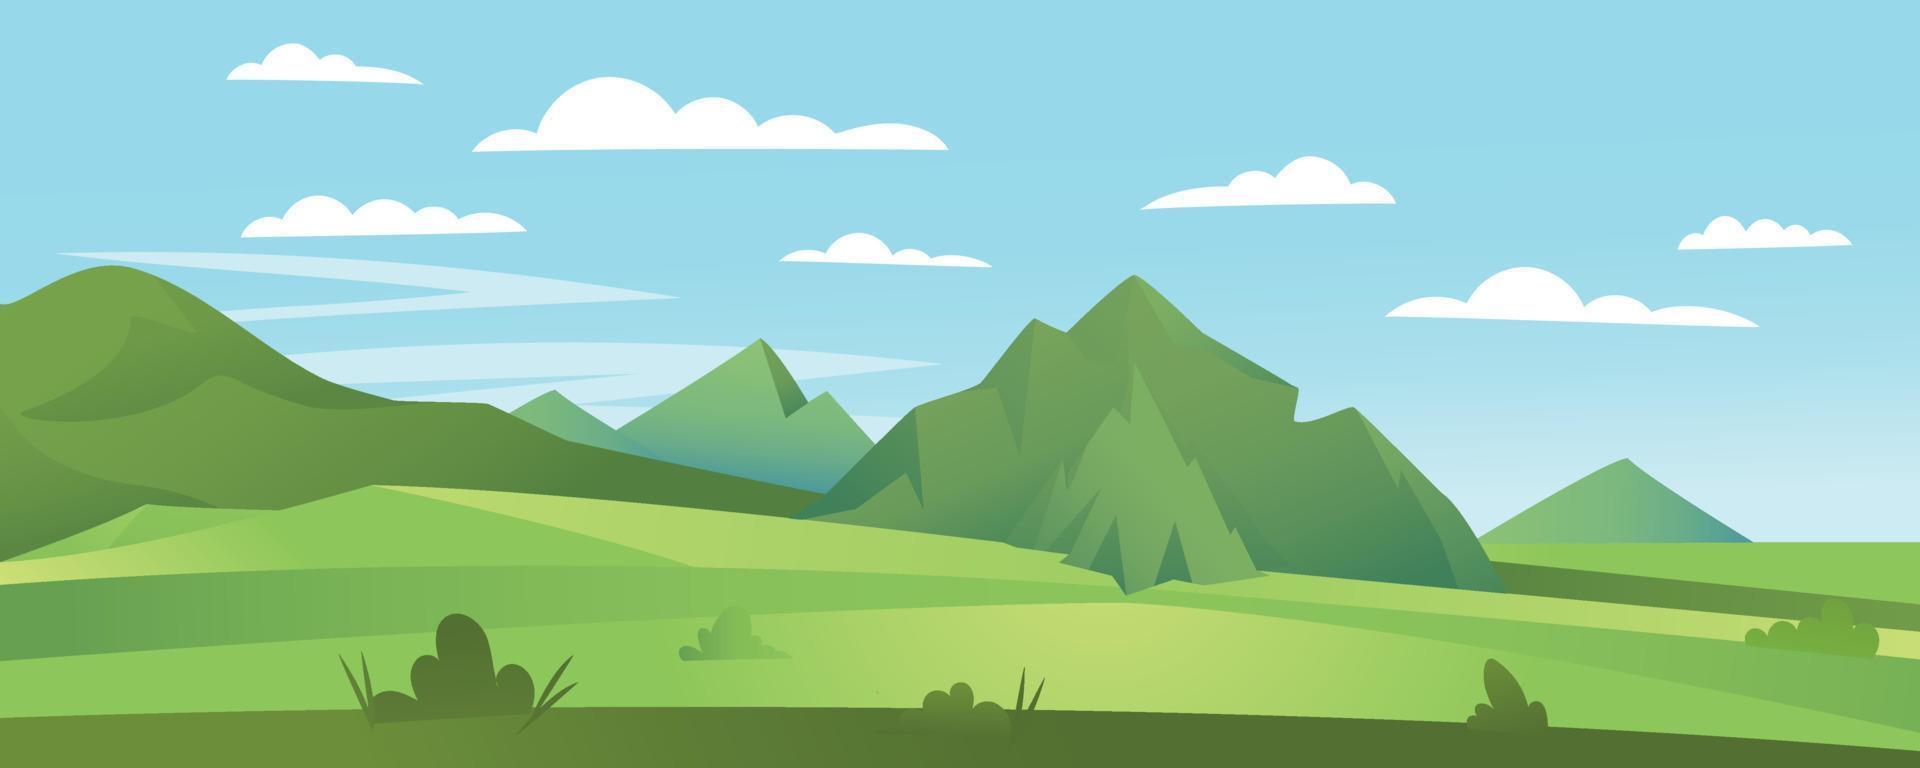 panorama plano dos desenhos animados da bela natureza primavera verão, prados verdes com montanhas no fundo do horizonte, paisagem montanhosa de verão, amanhecer sobre o vale. ilustração vetorial vetor